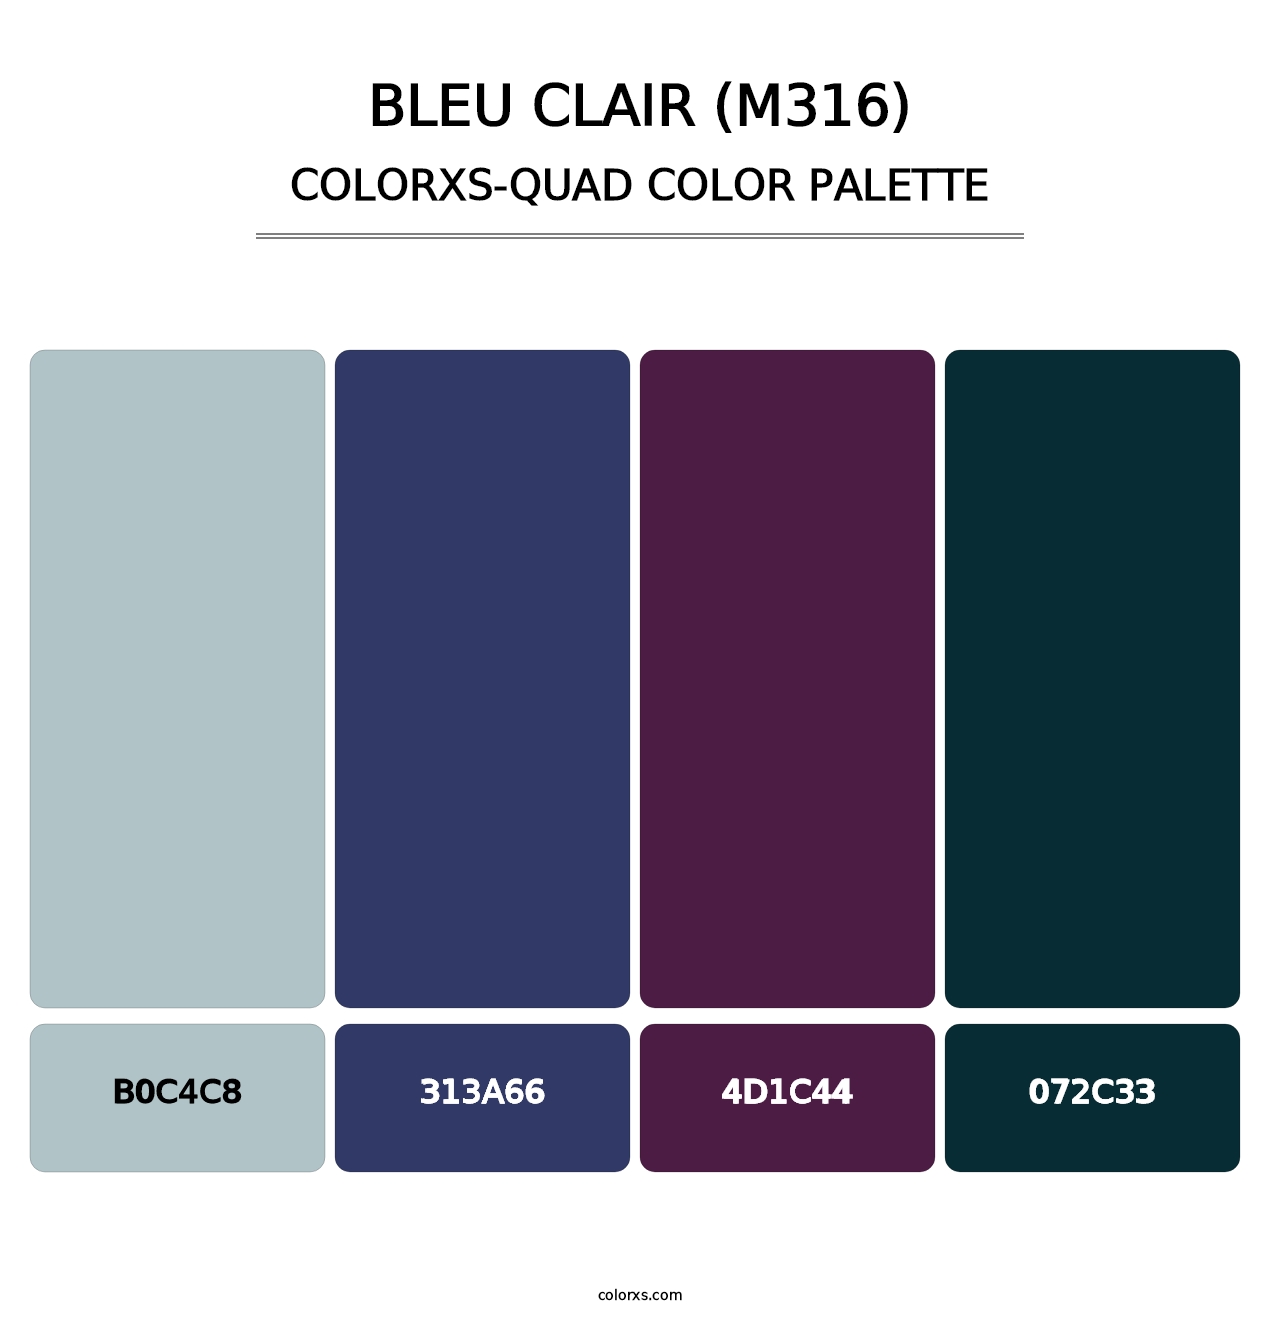 Bleu Clair (M316) - Colorxs Quad Palette